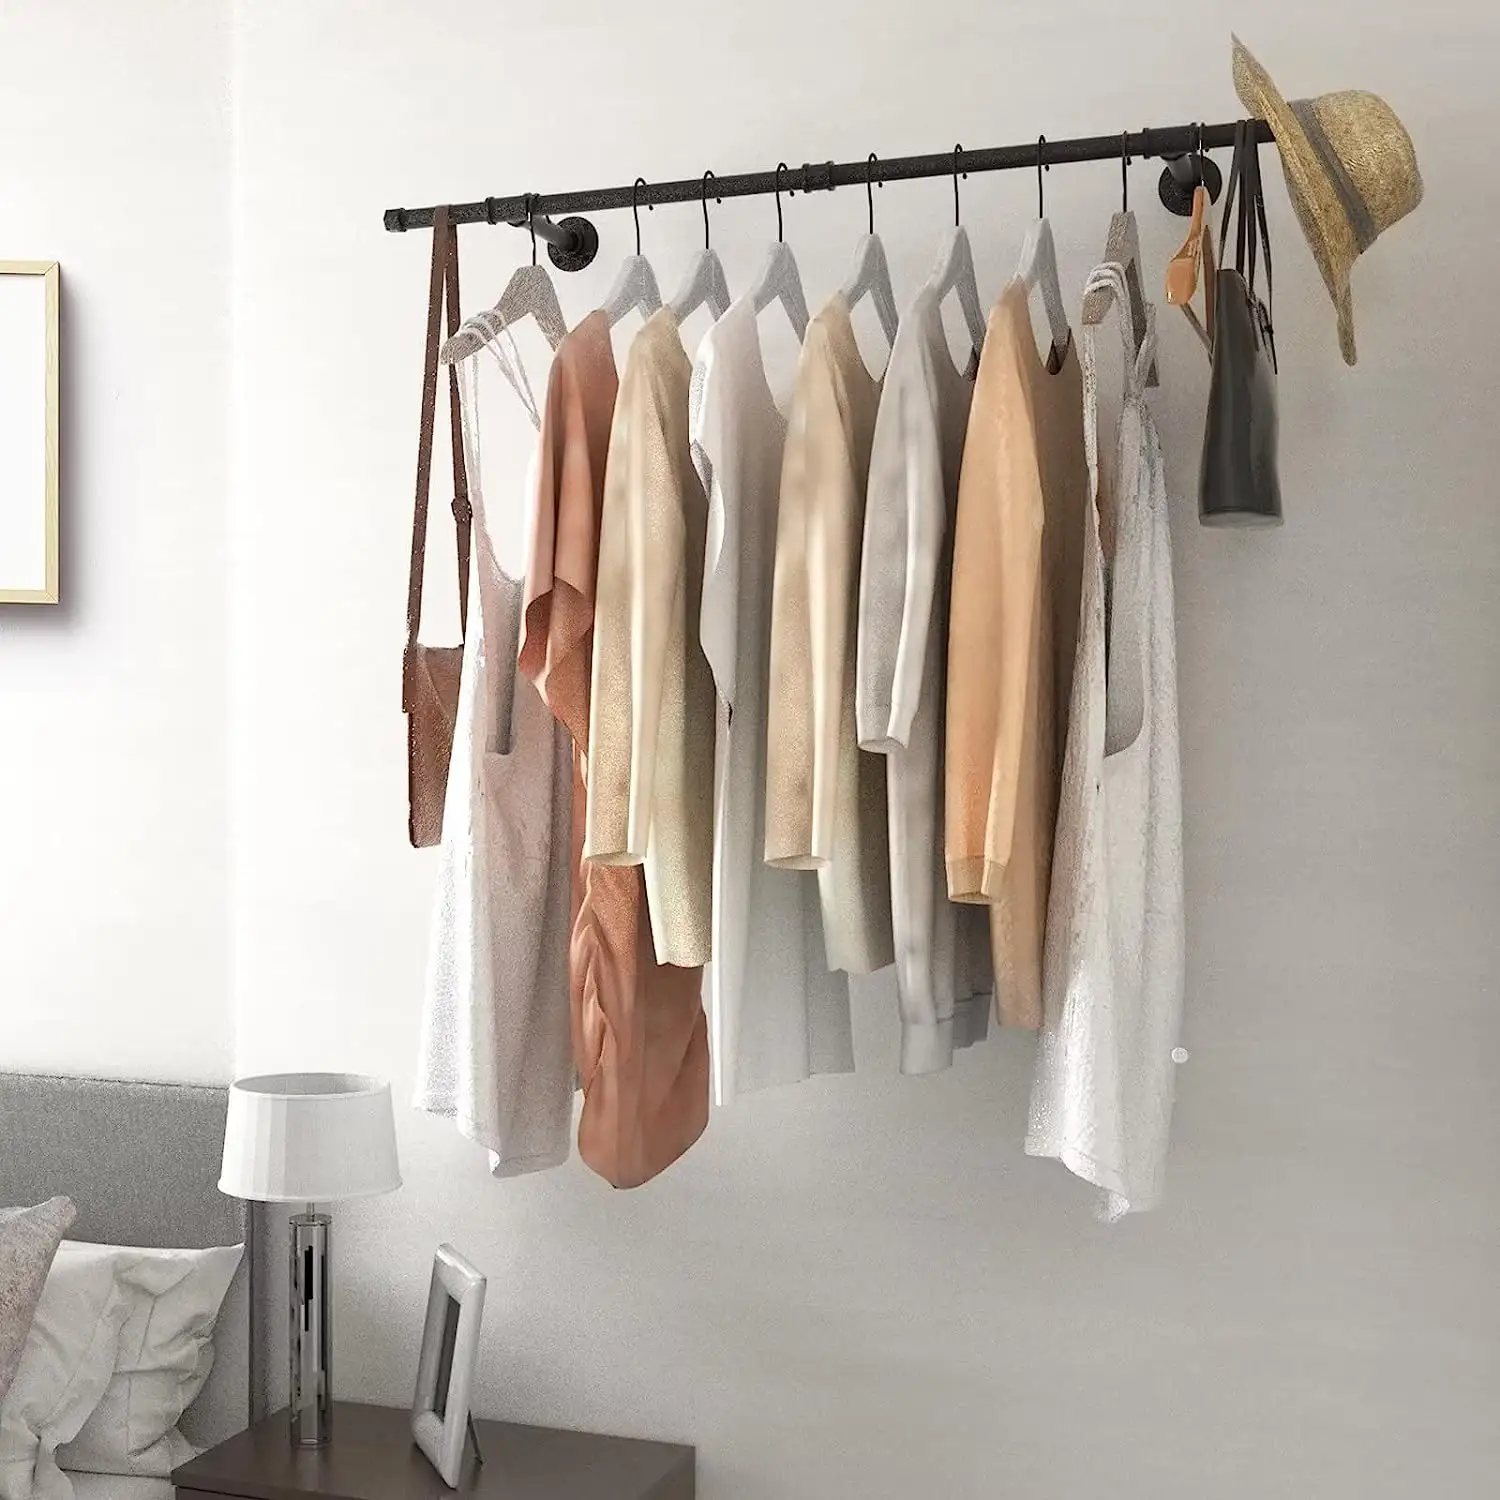 クローゼットランドリールーム衣服小売ディスプレイ用の衣類を吊るすための壁掛け式省スペース工業用パイプ衣類ラック